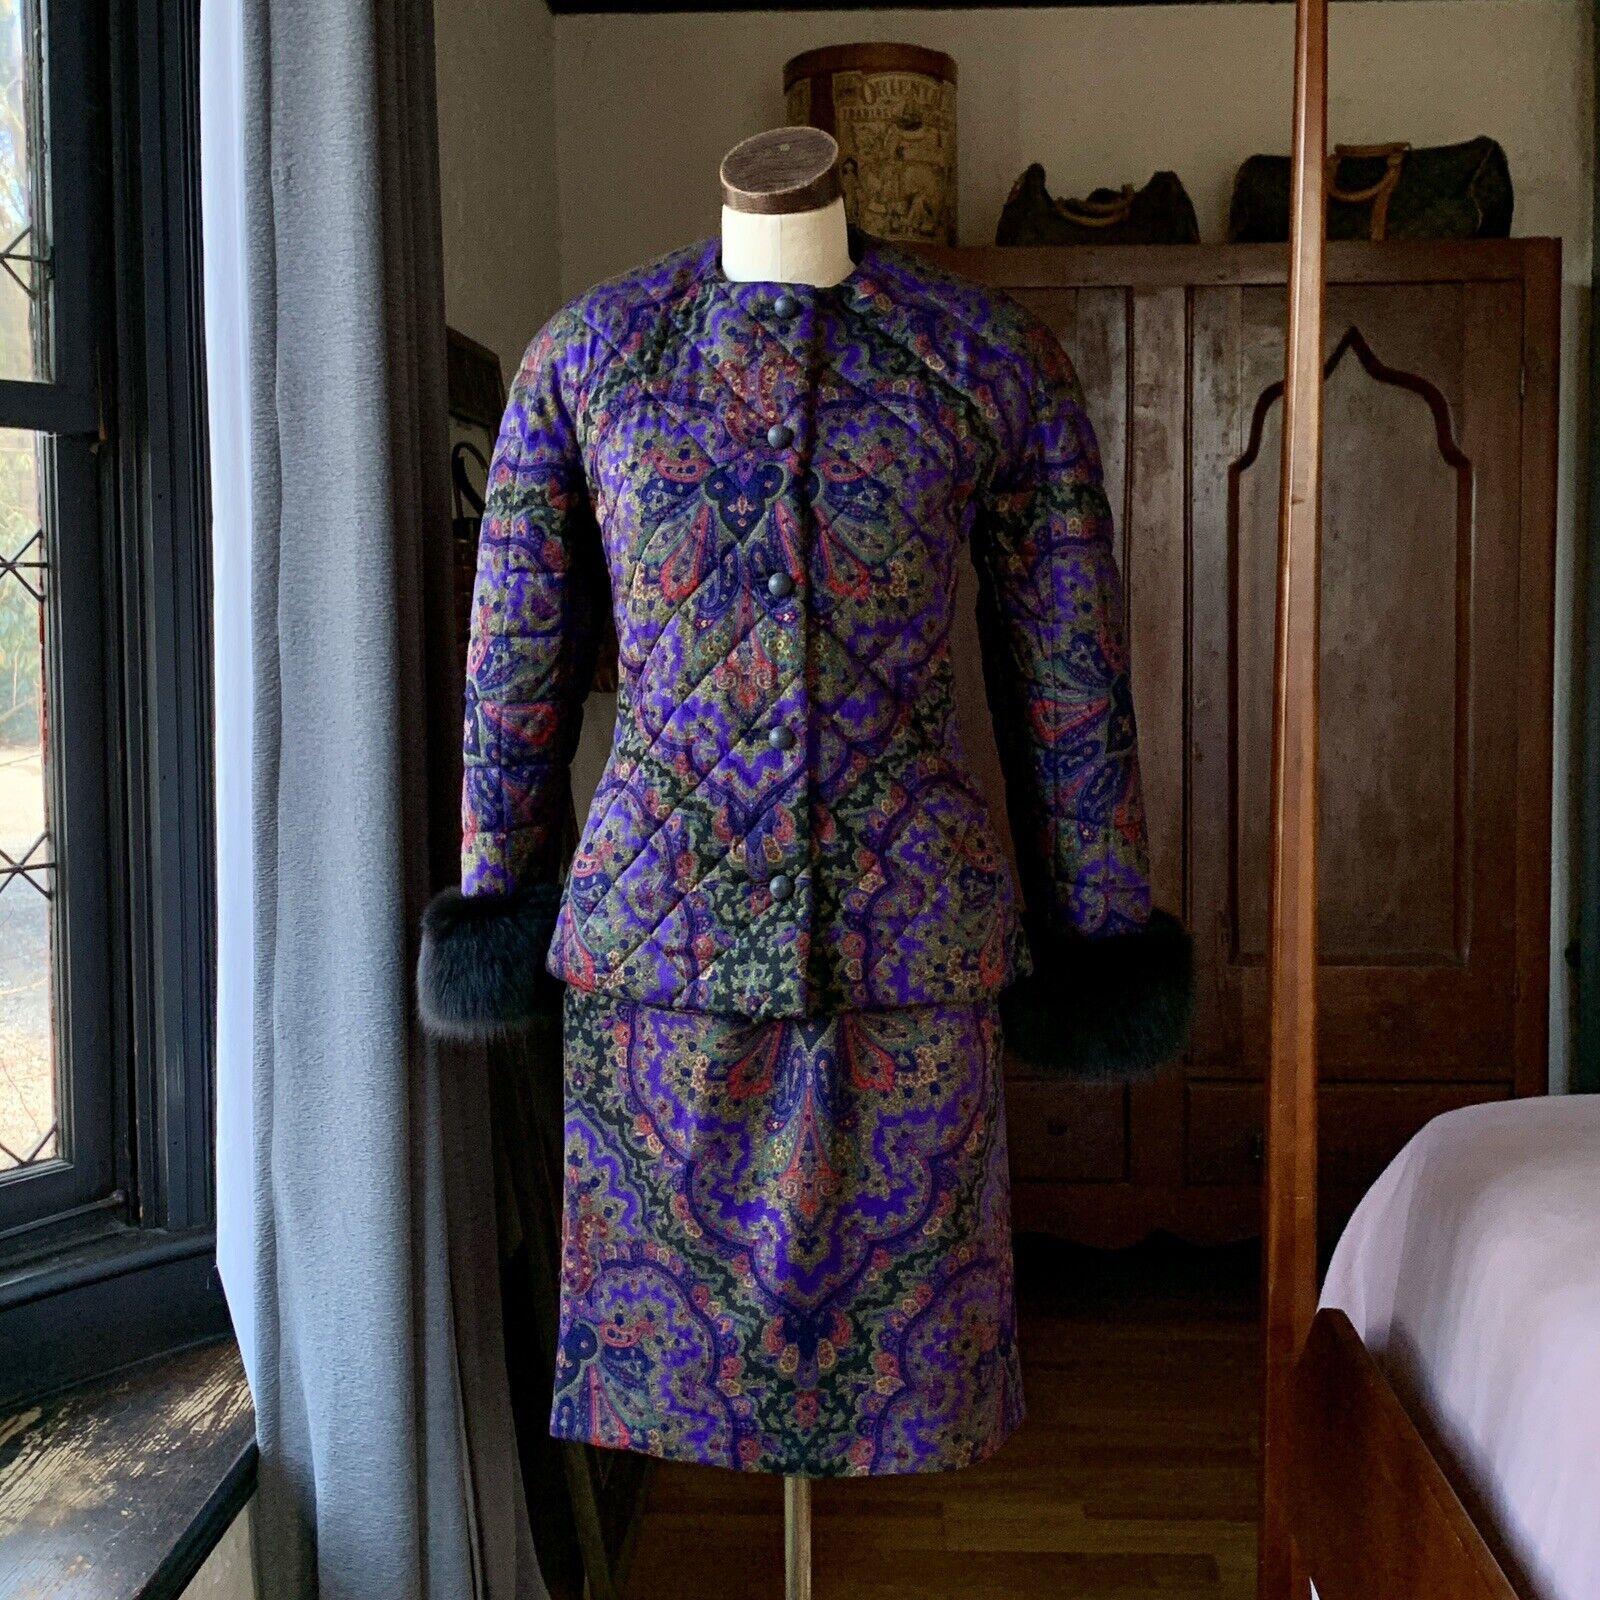 Gloria Sachs, Iconic Suit, Vintage 1980's, 100% Pure Wool (Soft), Made in USA, Union Tag, Fully Lined.

Jacke - Gesteppt, fünf runde Holz-/Lehmknöpfe, Schulterpolster, zwei Taschen, geschmeidige schwarze Pelzmanschetten,

Rock - Rückenschlitz, Haken